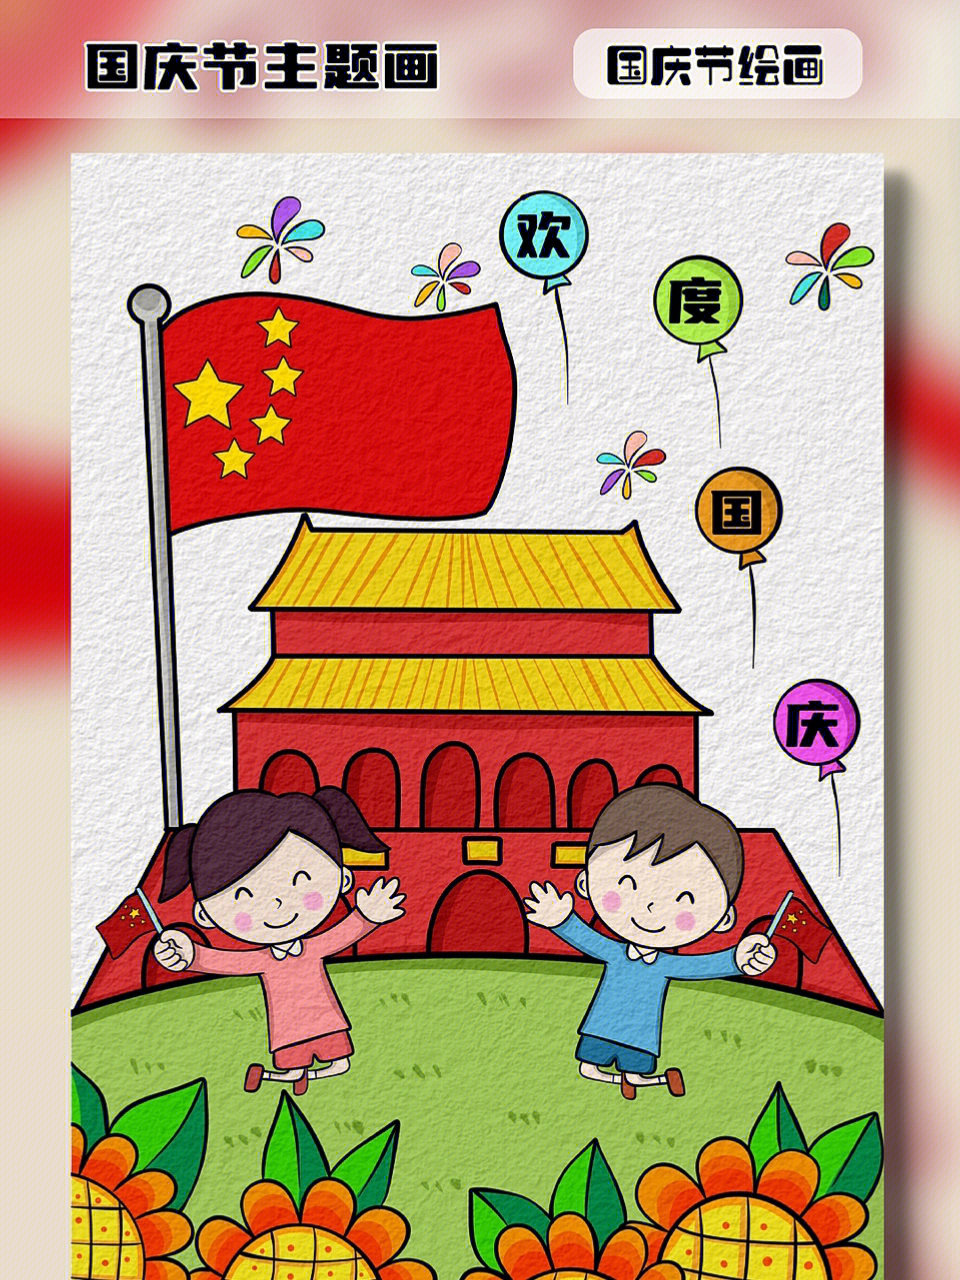 一起来画一幅欢度国庆的幼儿简笔画吧#国庆节主题画#国庆节儿童画